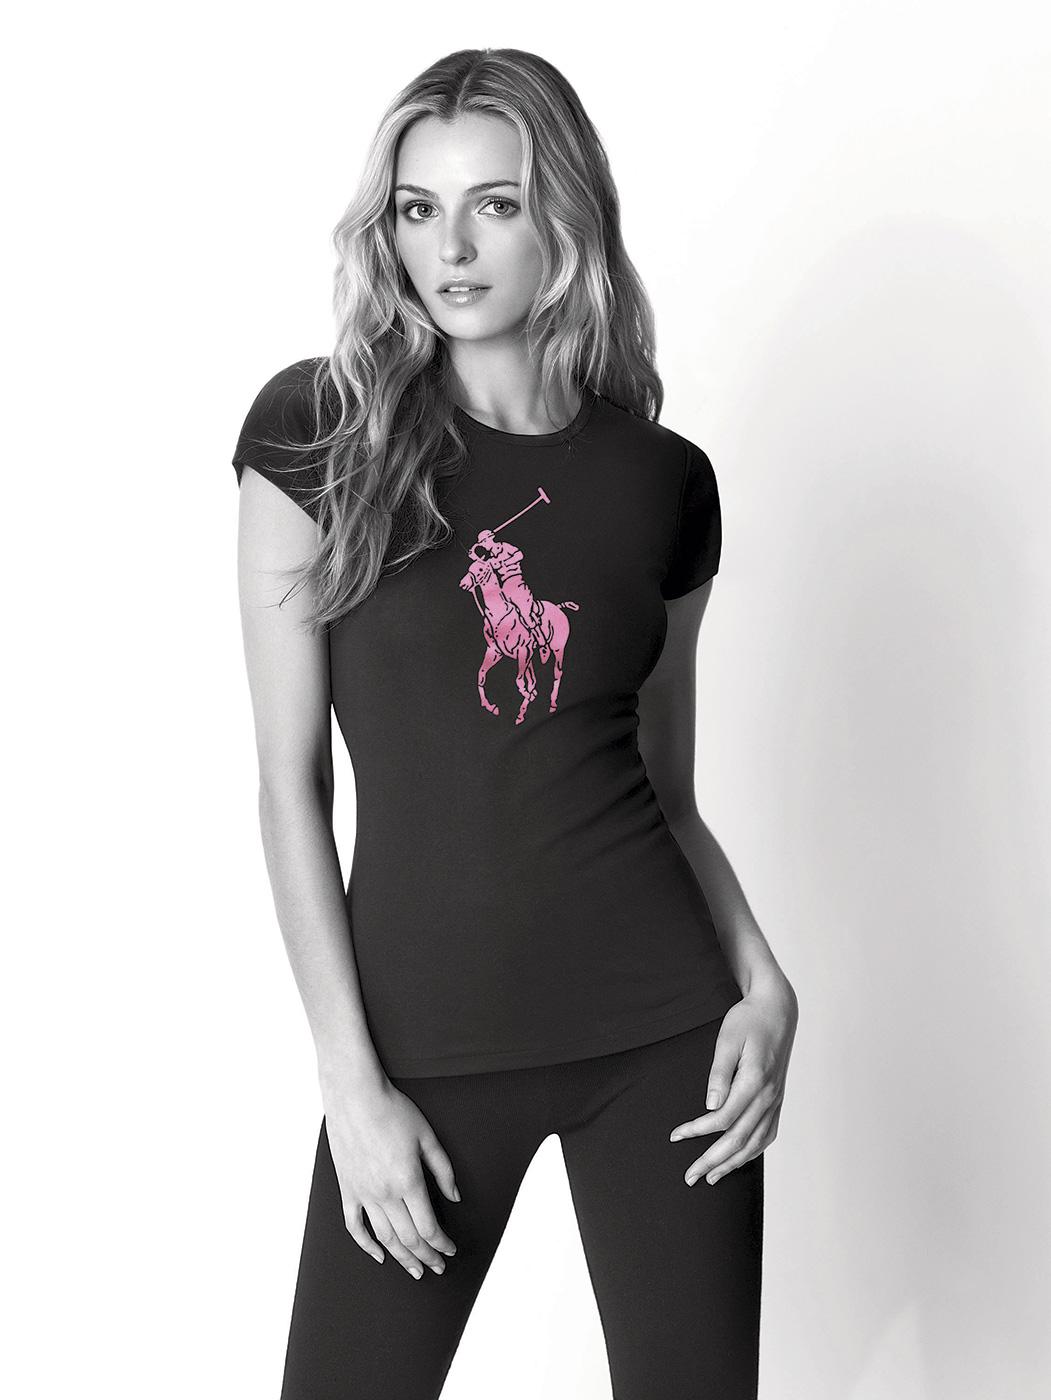  &#xAB; Le cancer du sein ne concerne pas seulement les femmes &#x2014; il nous affecte tous. Pink Pony repr&#xE9;sente notre contribution &#xE0; la lutte contre le cancer. &#xBB;